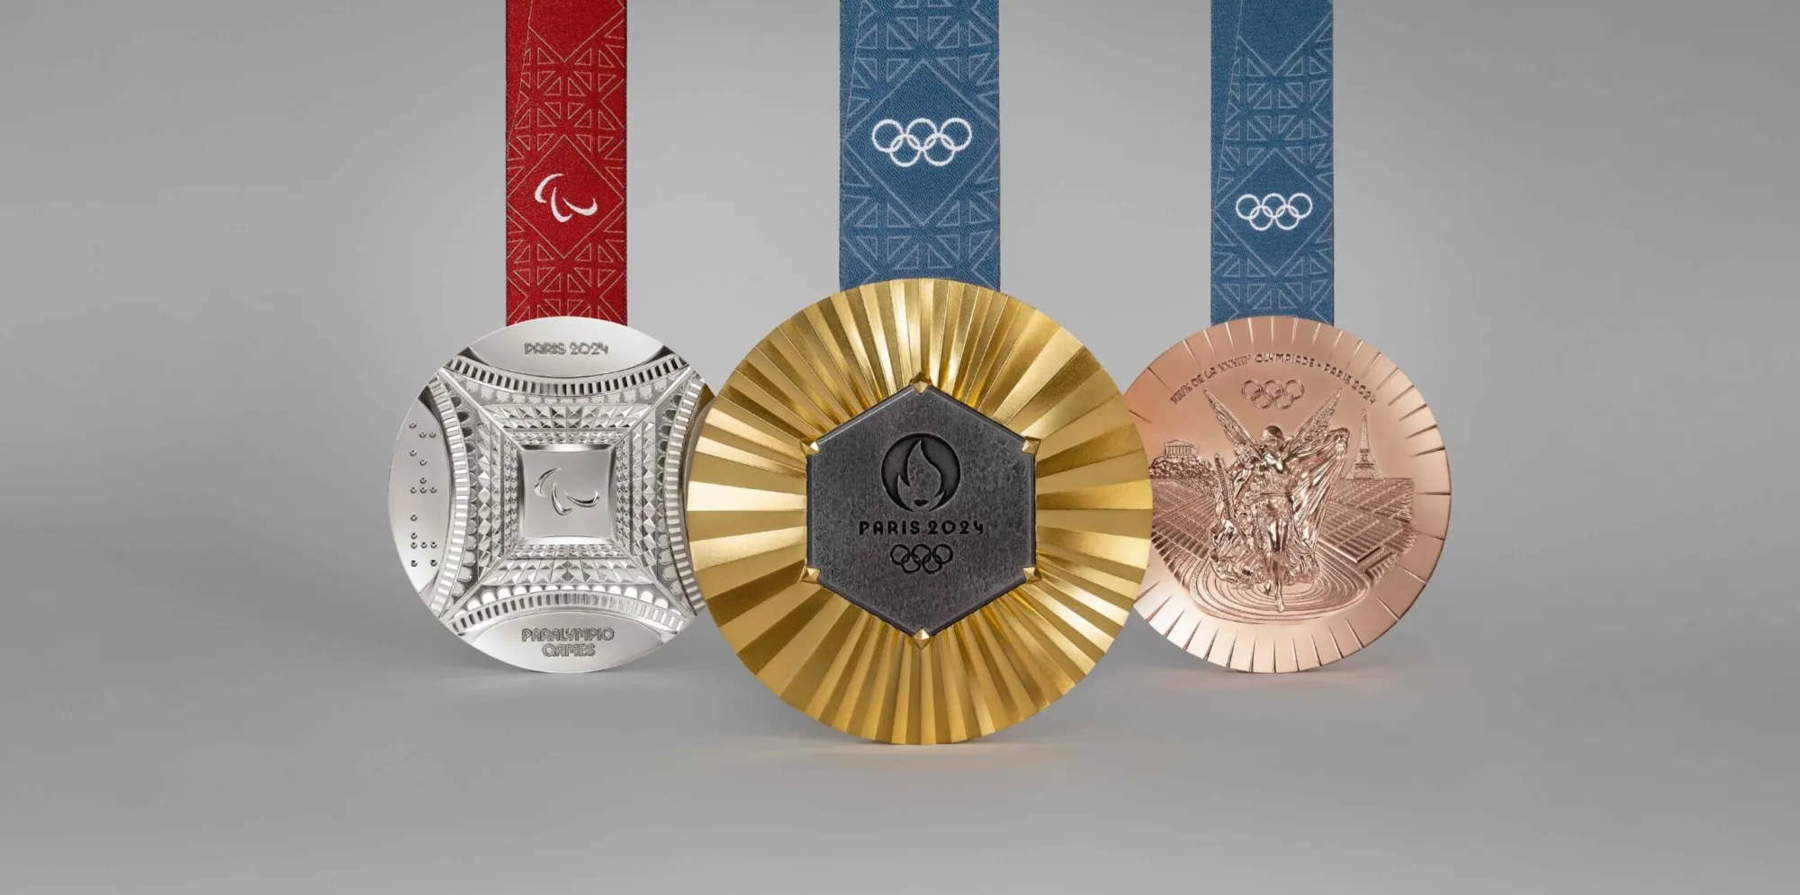 Le medaglie delle Olimpiadi di Parigi 2024 conterranno pezzi della Torre Eiffel